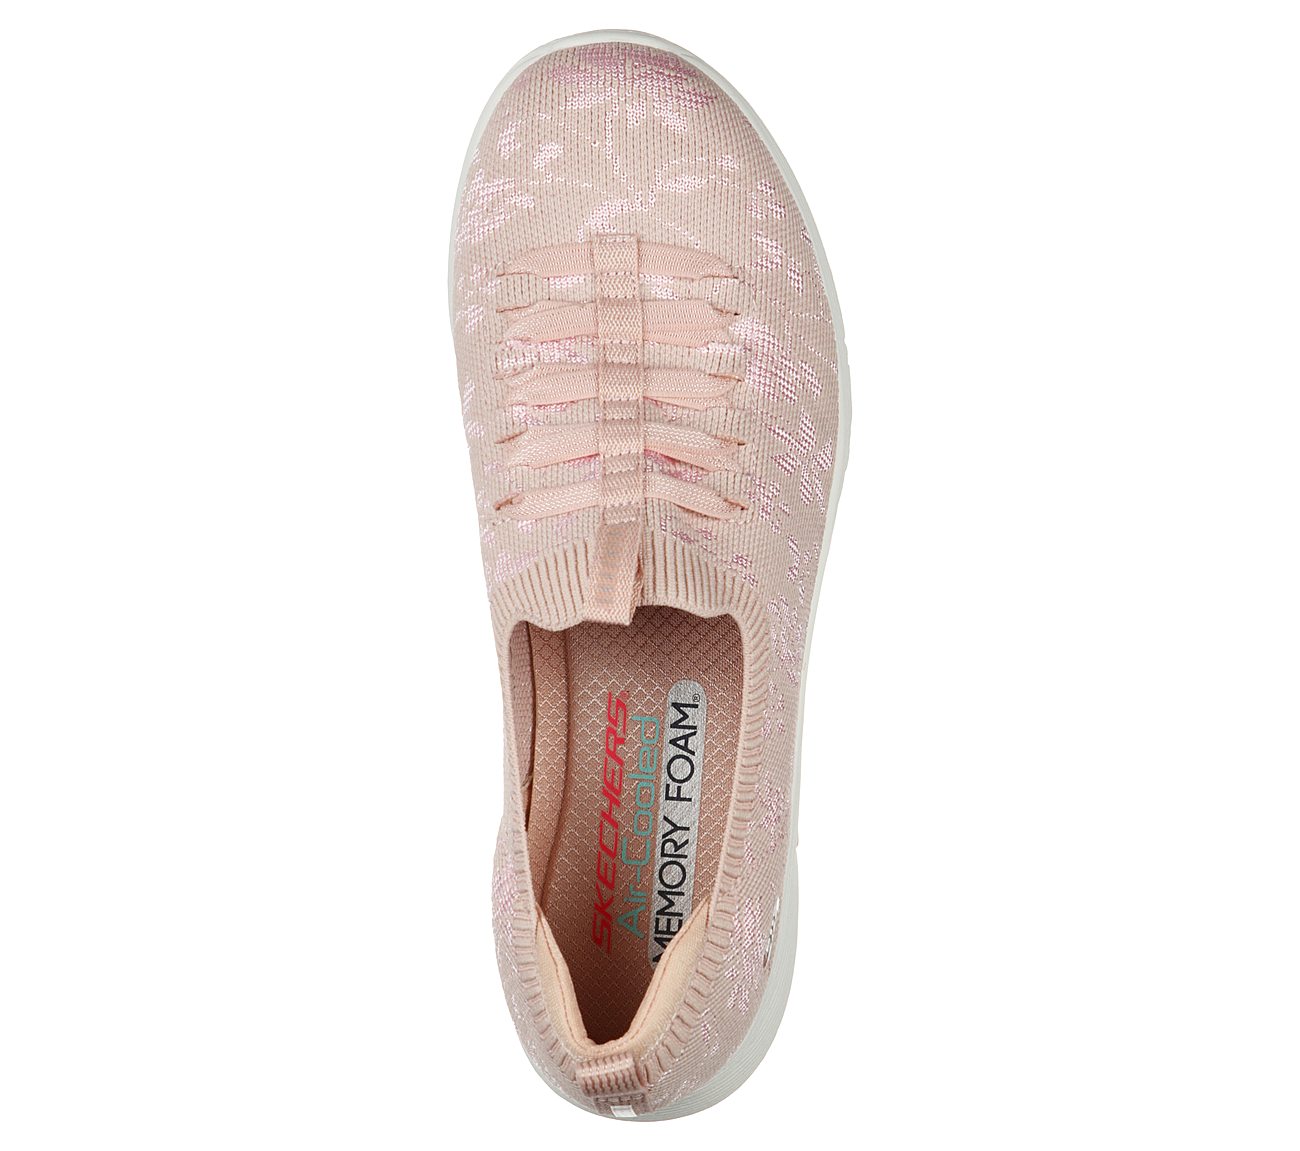 ESLA-GLEEFUL BLISS, ROSE Footwear Top View